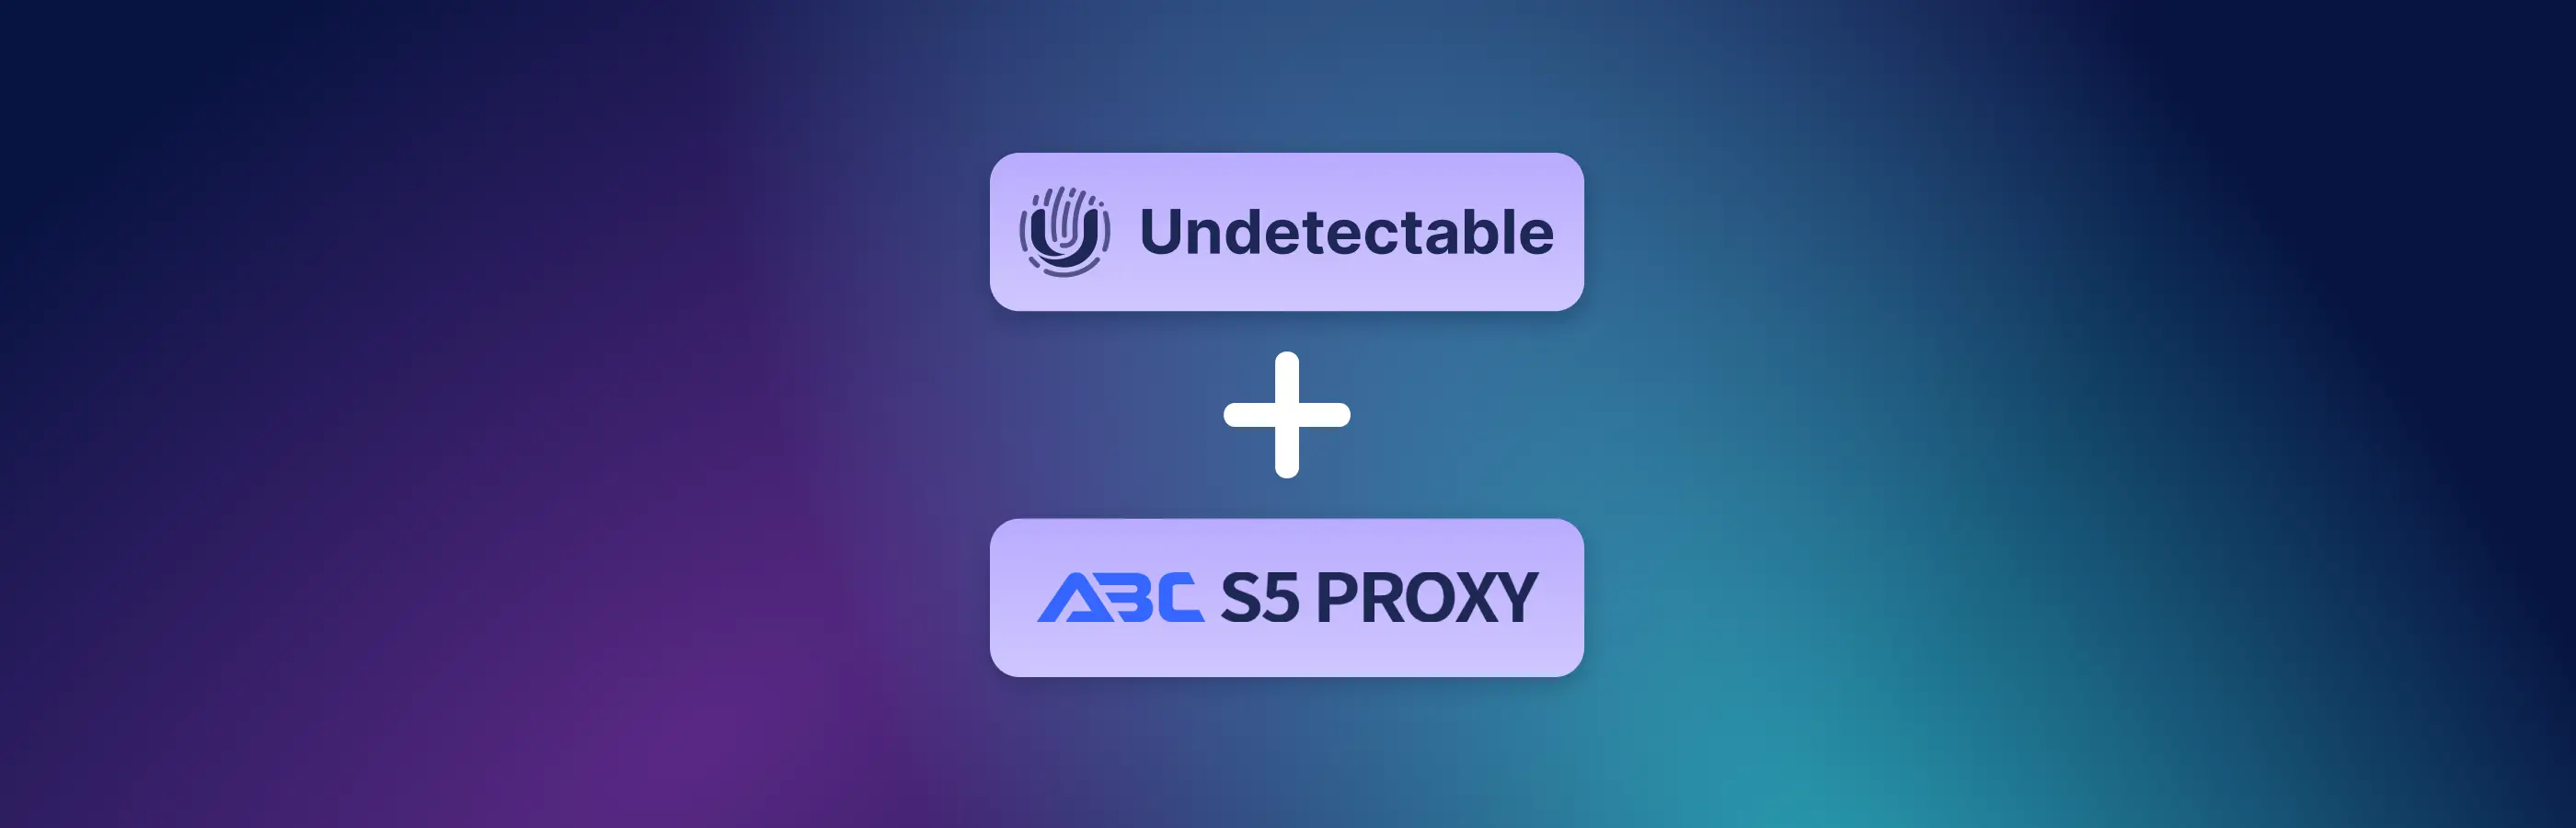 将ABCProxy连接到Undetectable的说明